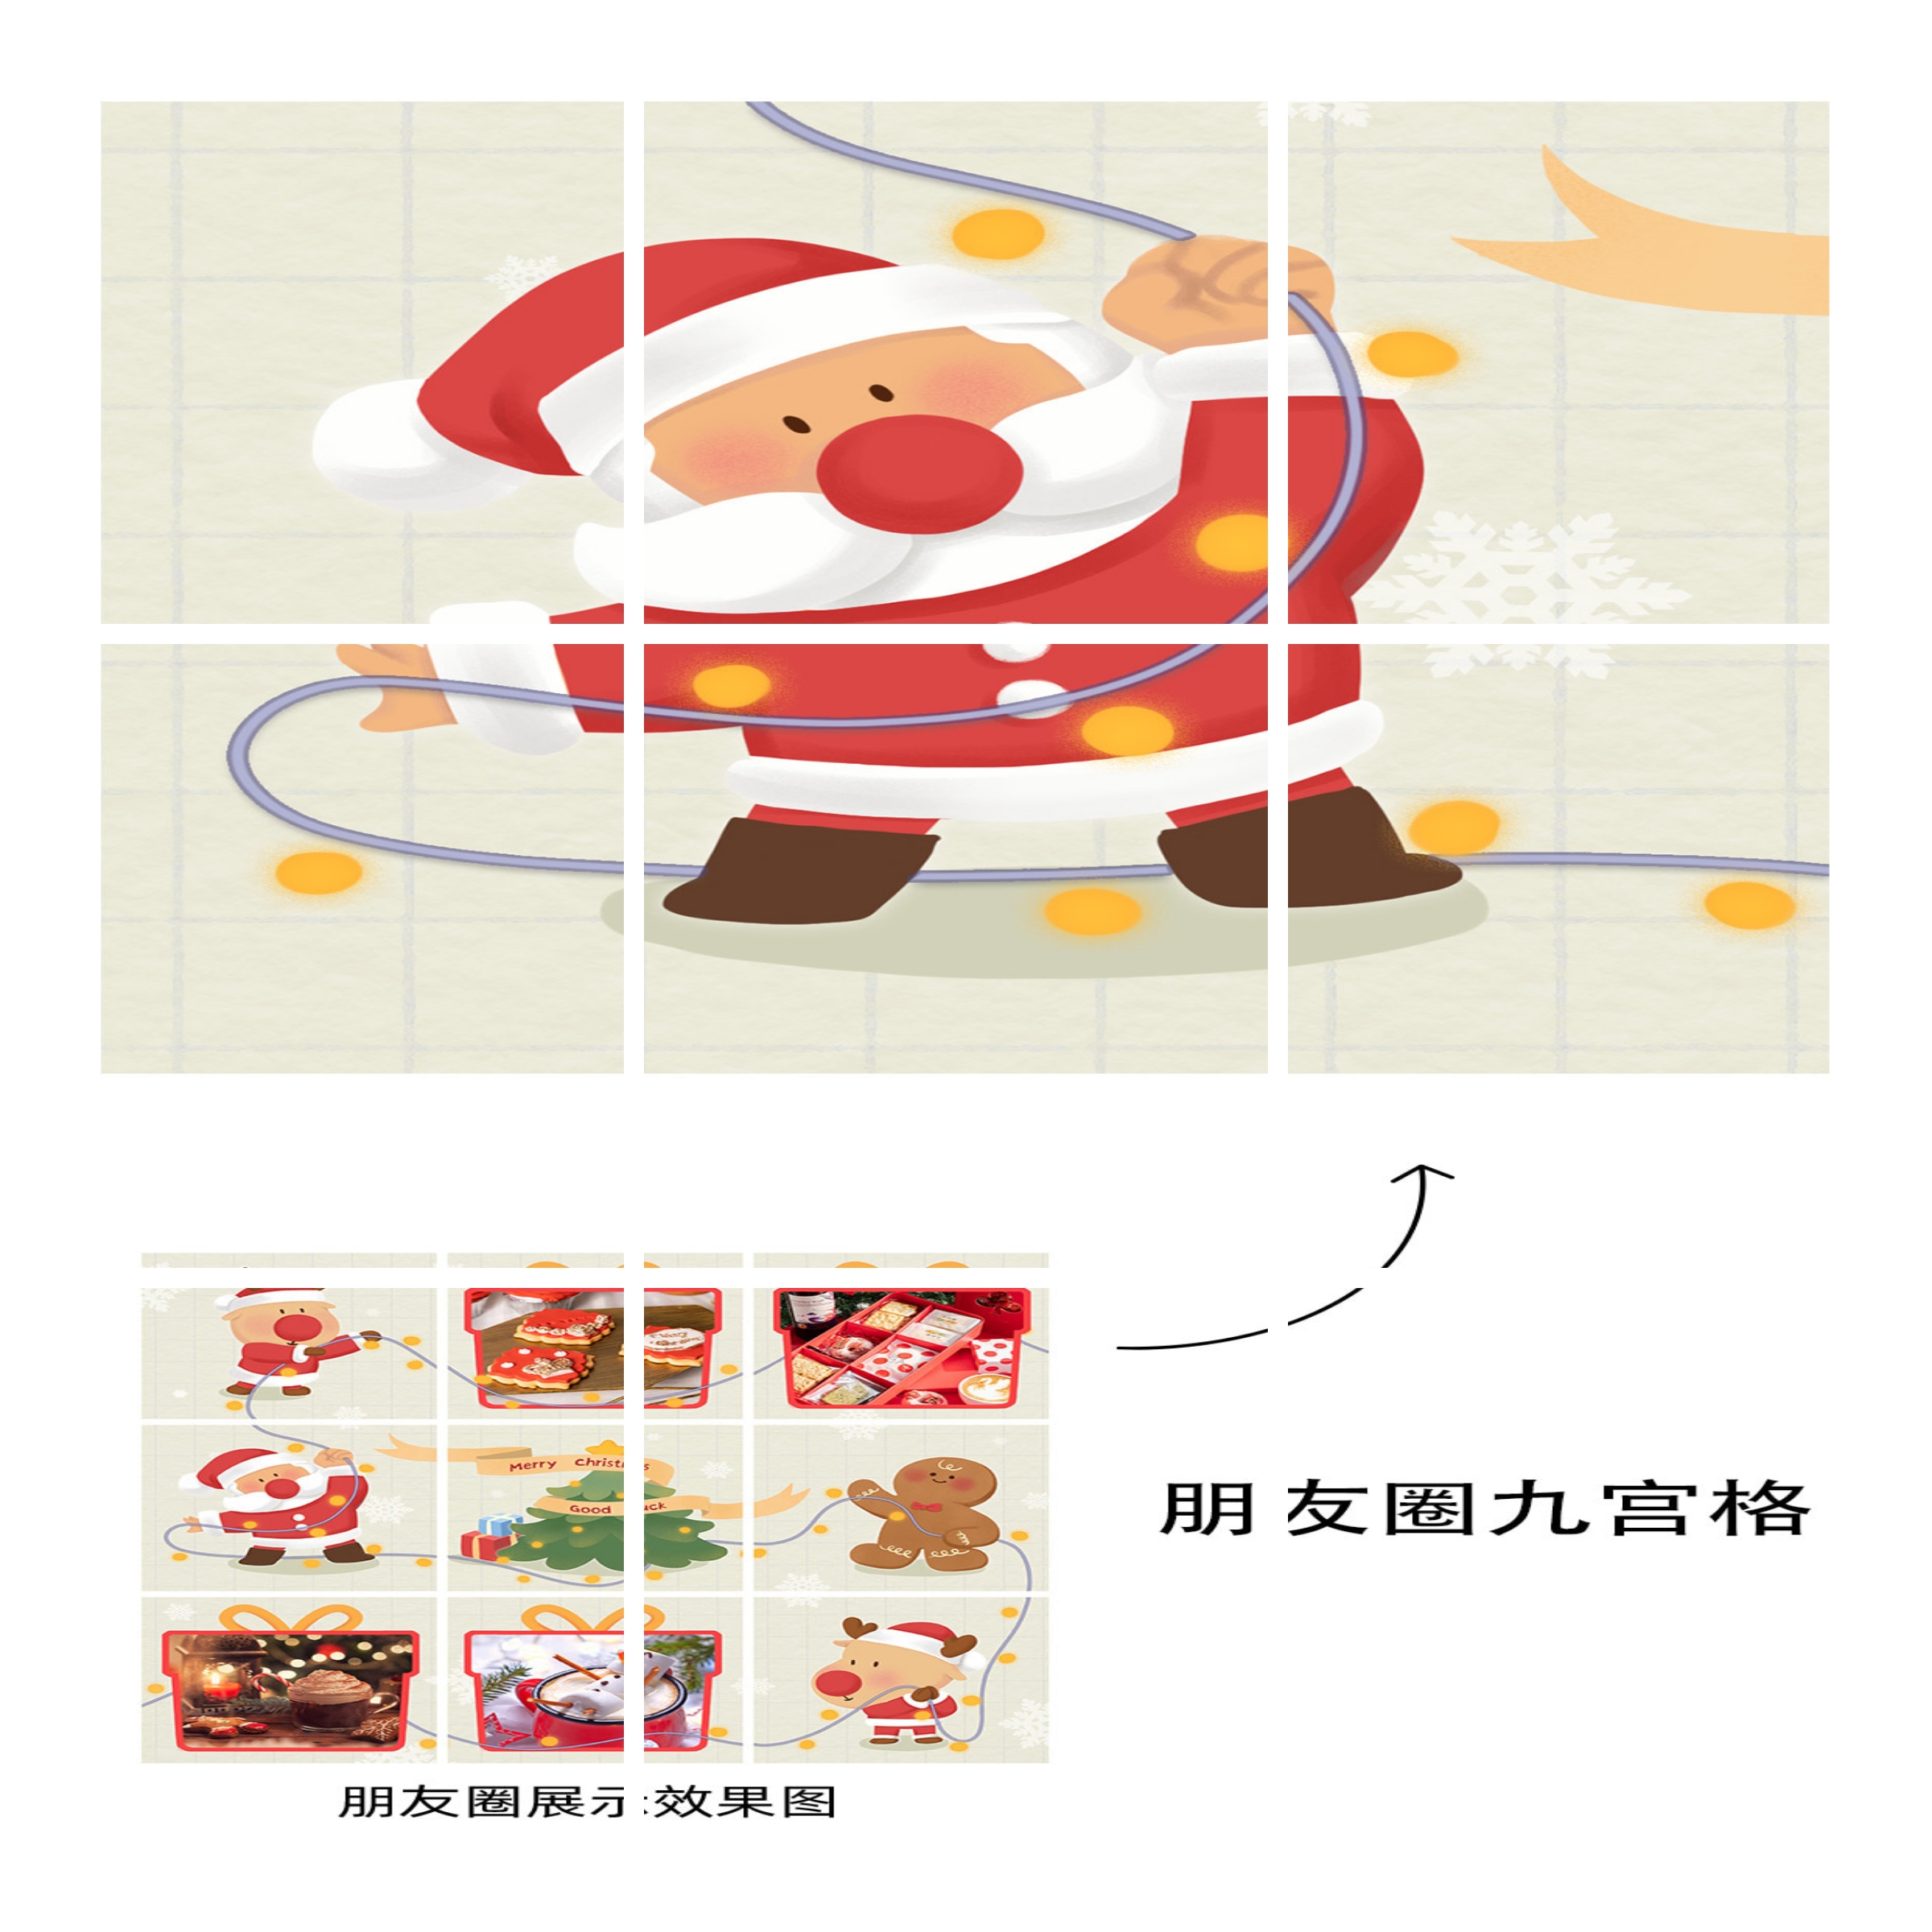 圣诞节产品展示九宫格可爱卡通04预览效果